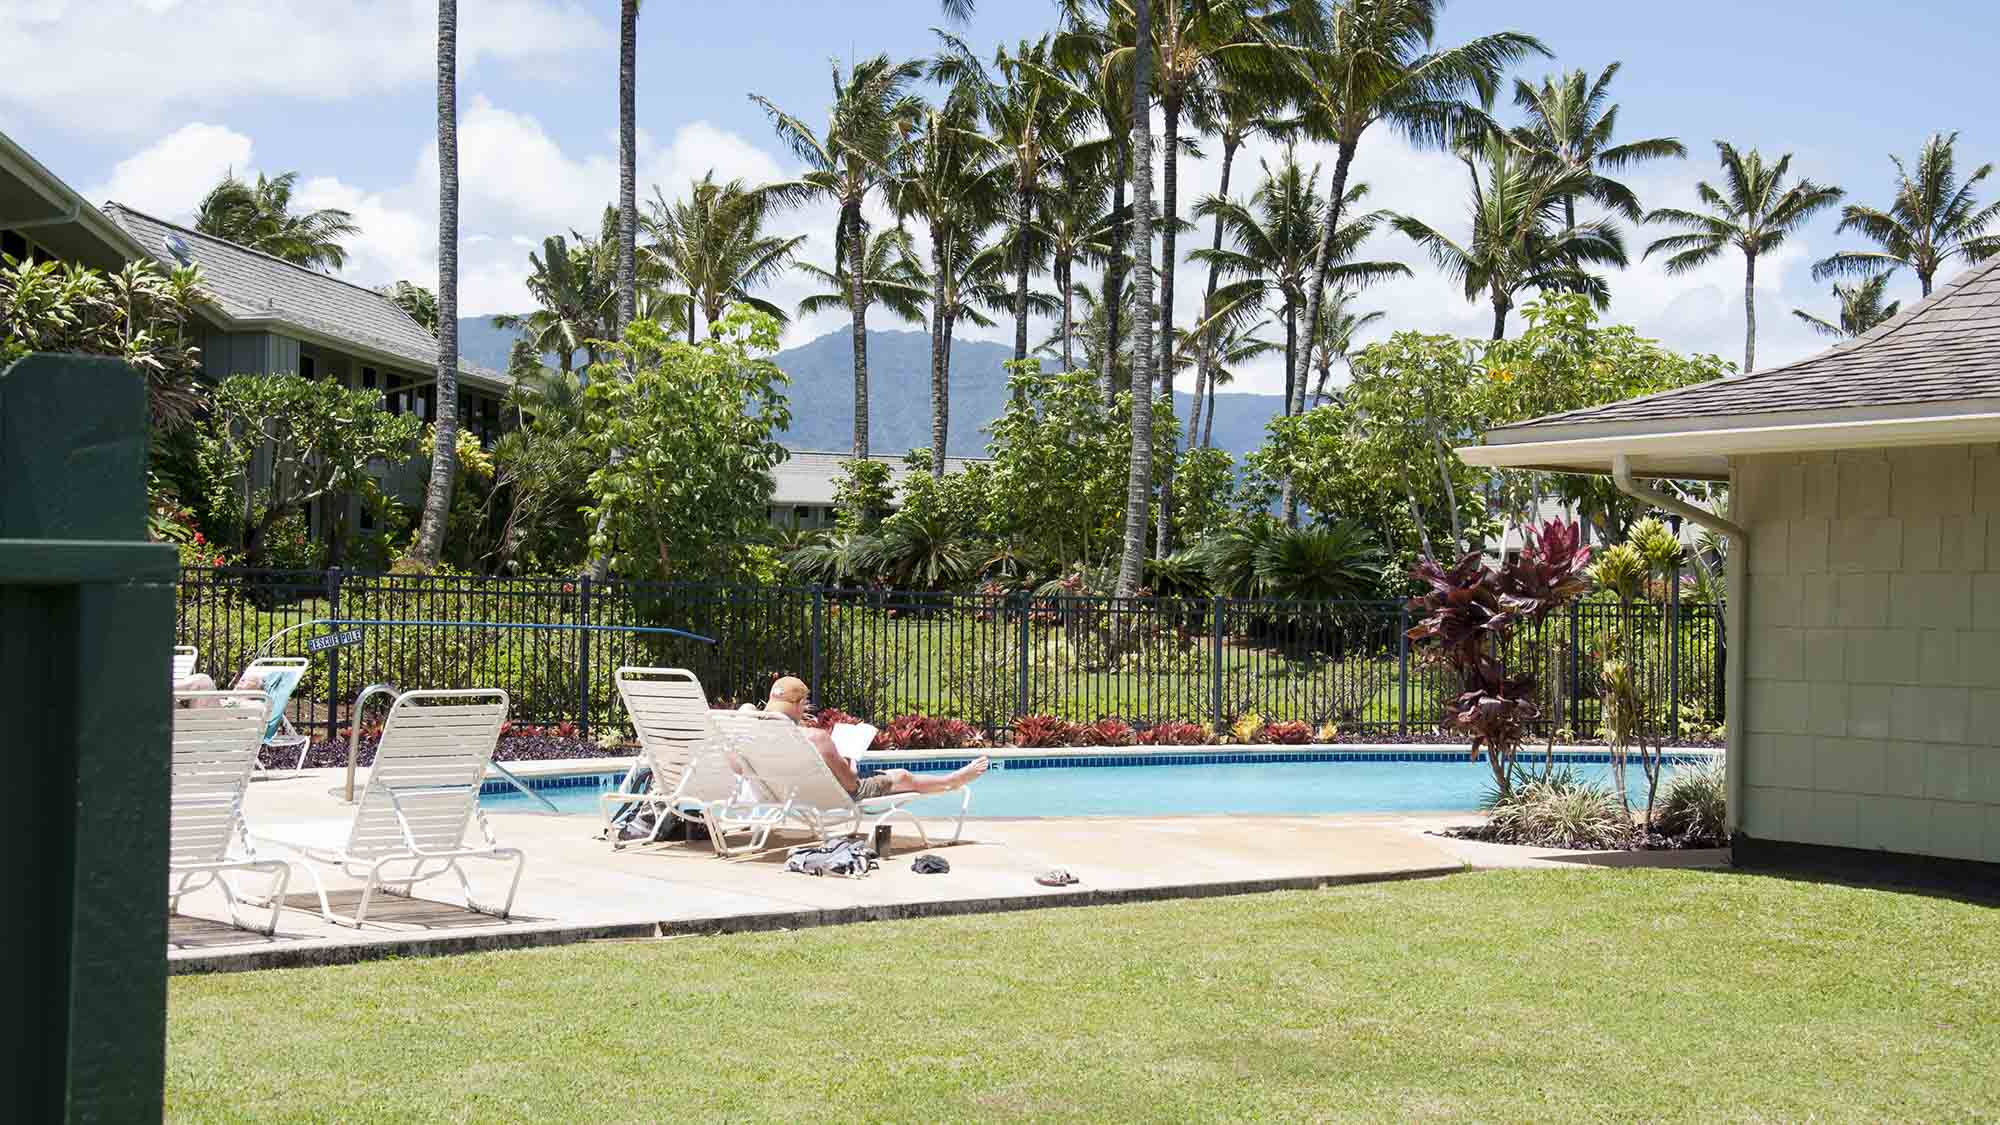 Alii kai resort kauai